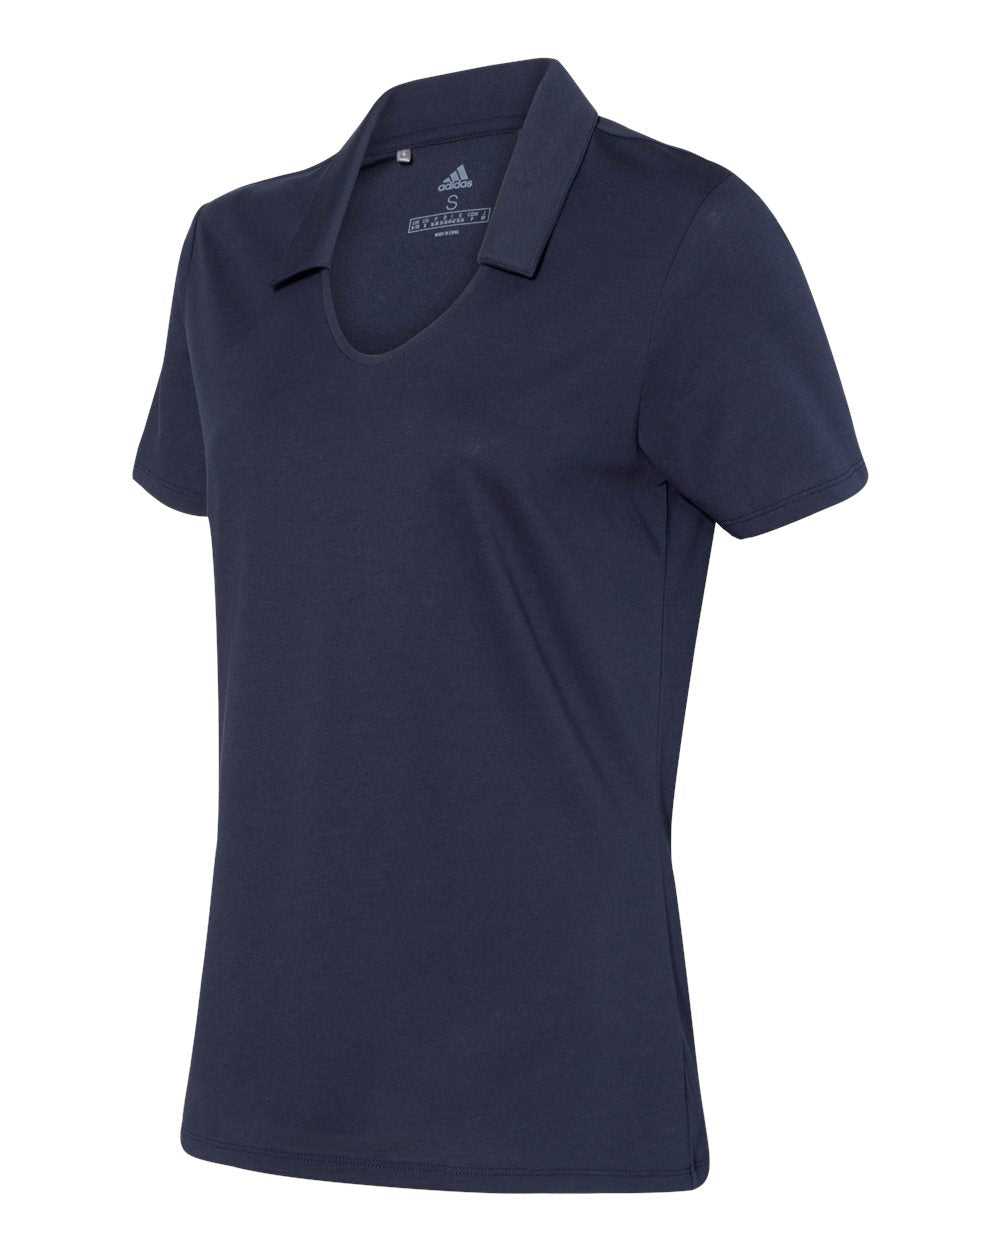 Adidas A323 Women's Cotton Blend Sport Shirt - Navy - HIT a Double